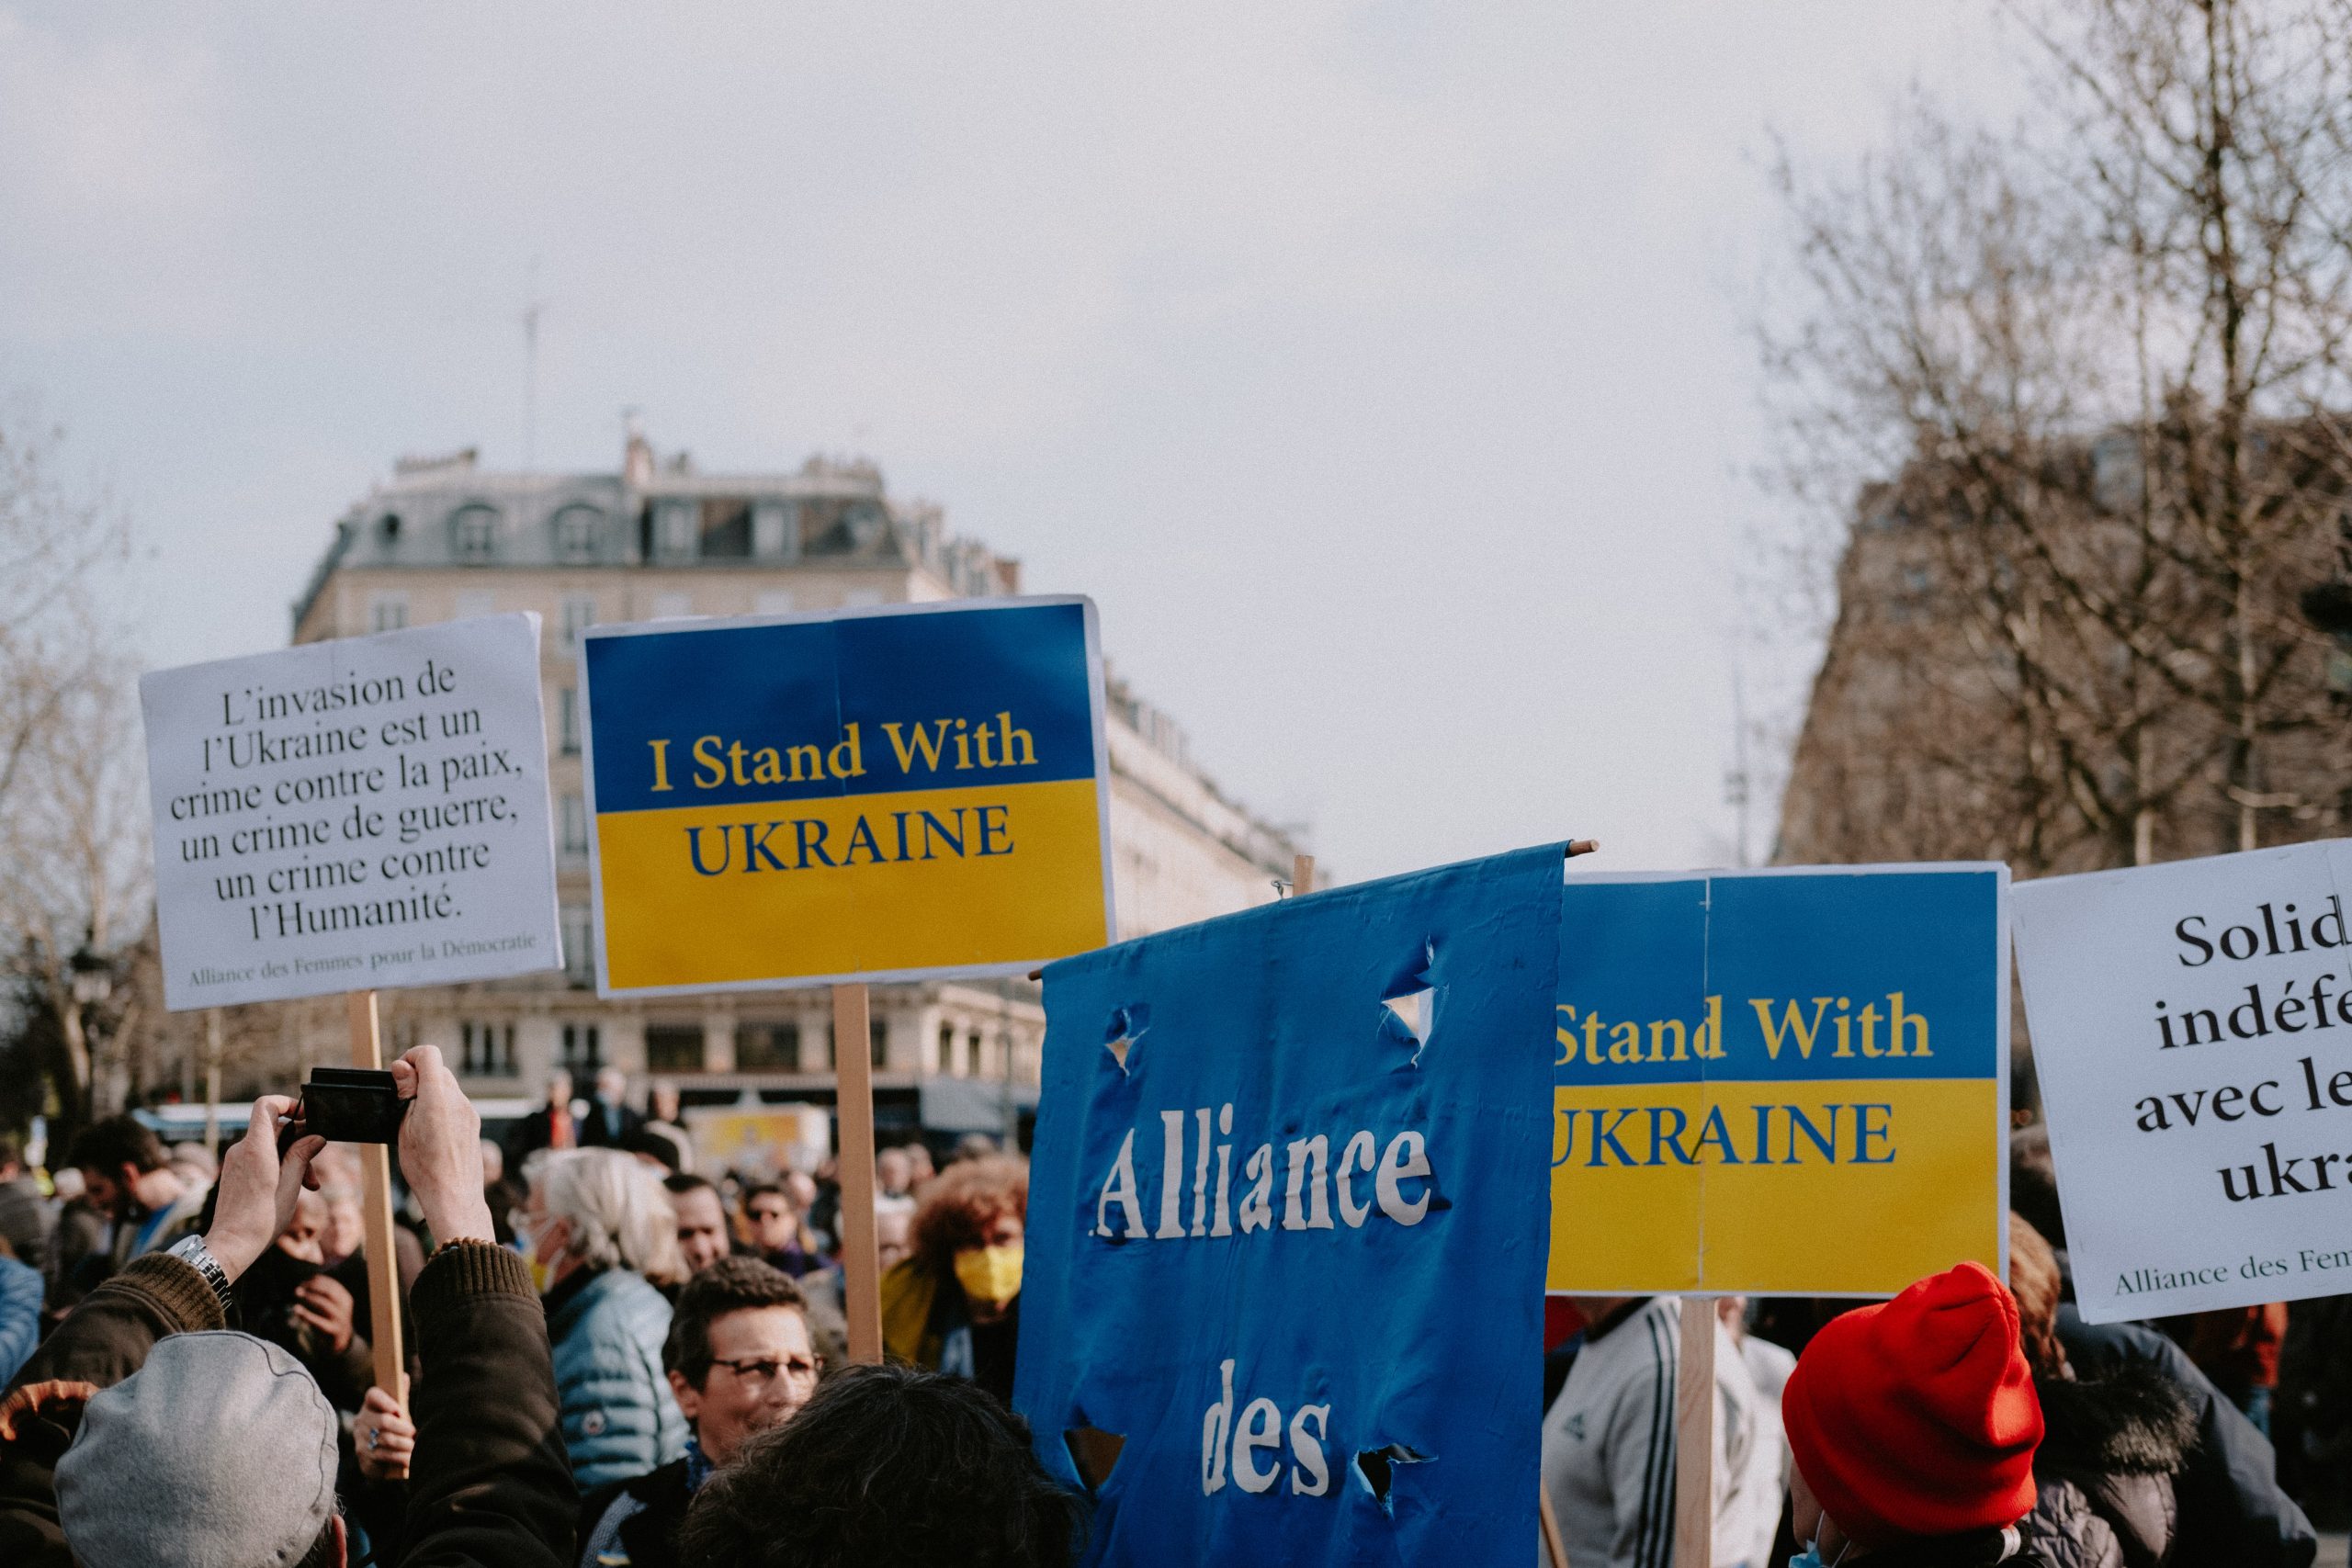 Незламні: ЛГБТ+движение в Украине. 2022